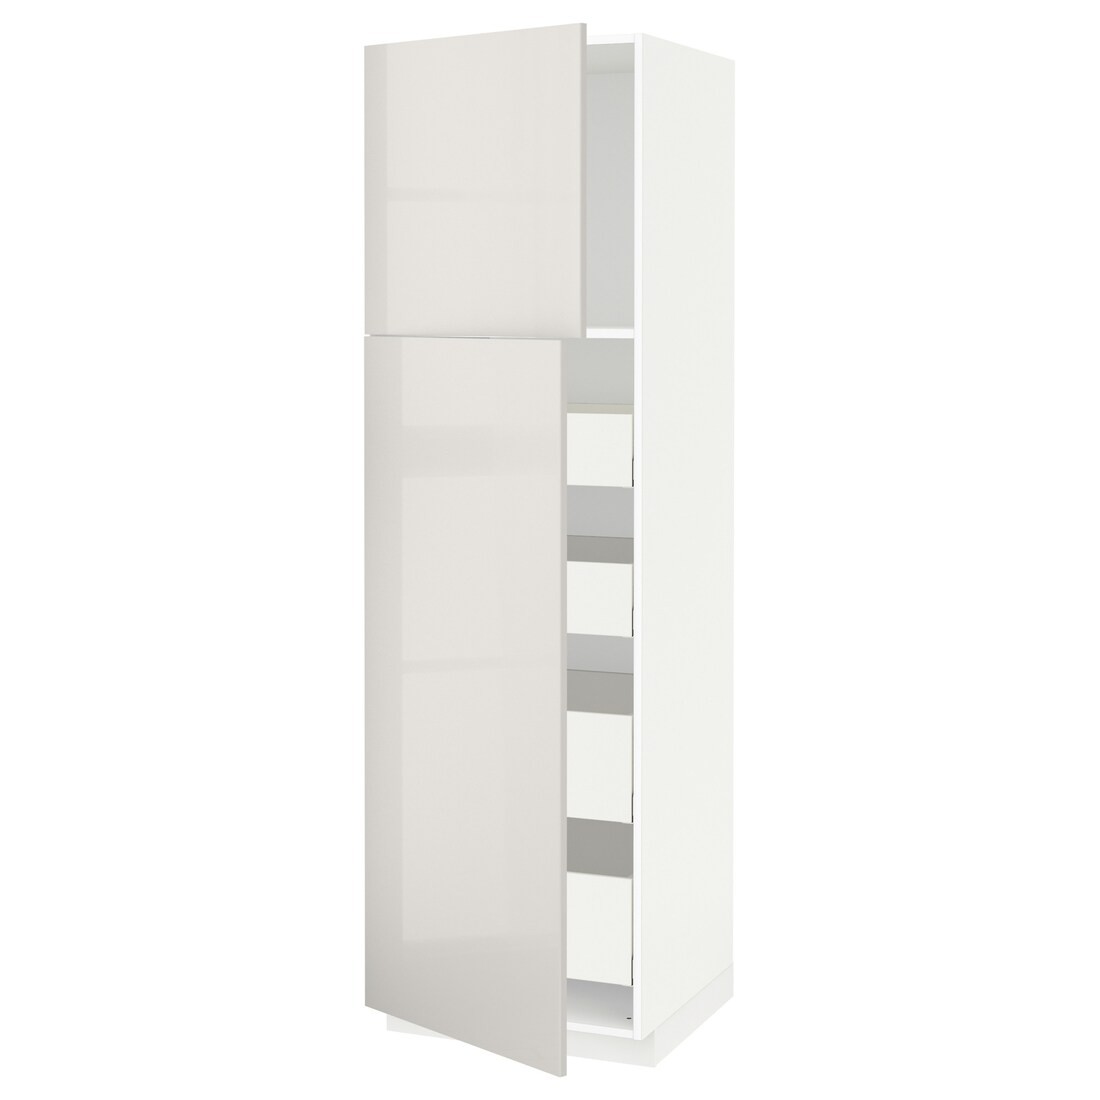 METOD МЕТОД / MAXIMERA МАКСИМЕРА Шкаф высокий 2 двери / 4 ящика, белый / Ringhult светло-серый, 60x60x200 см